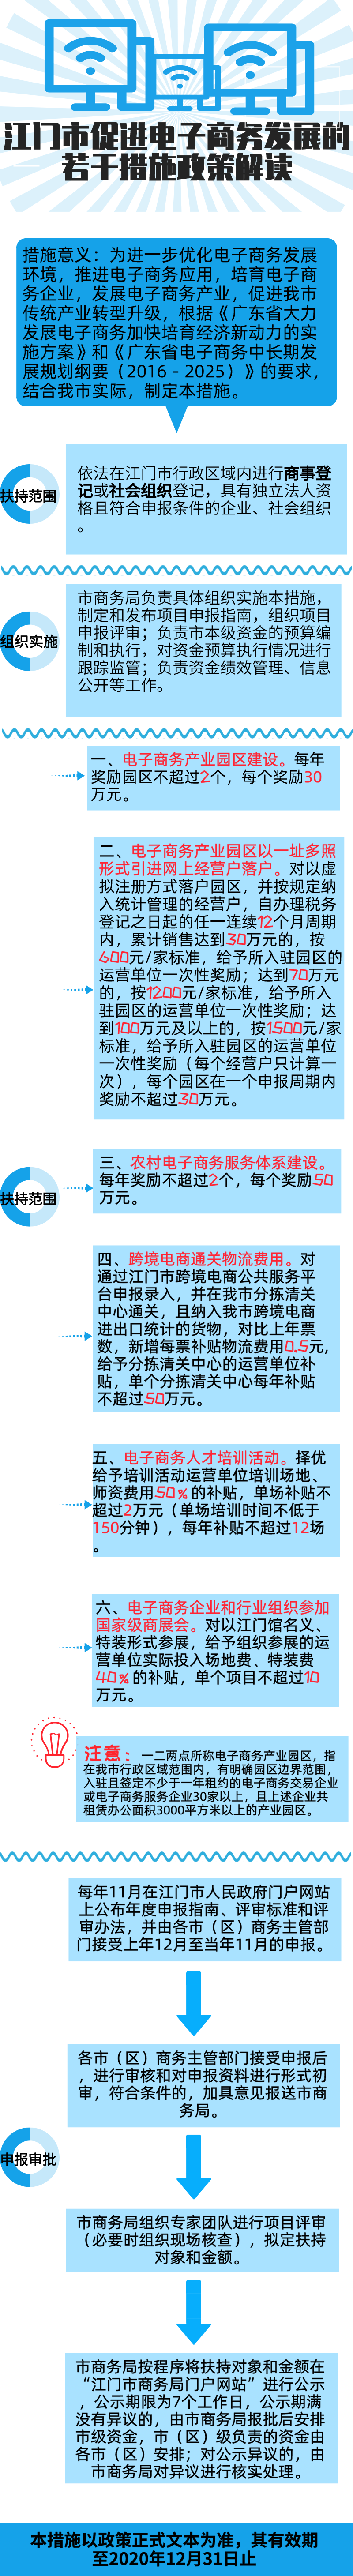 江商务服贸函2020060号附件3——图解.png